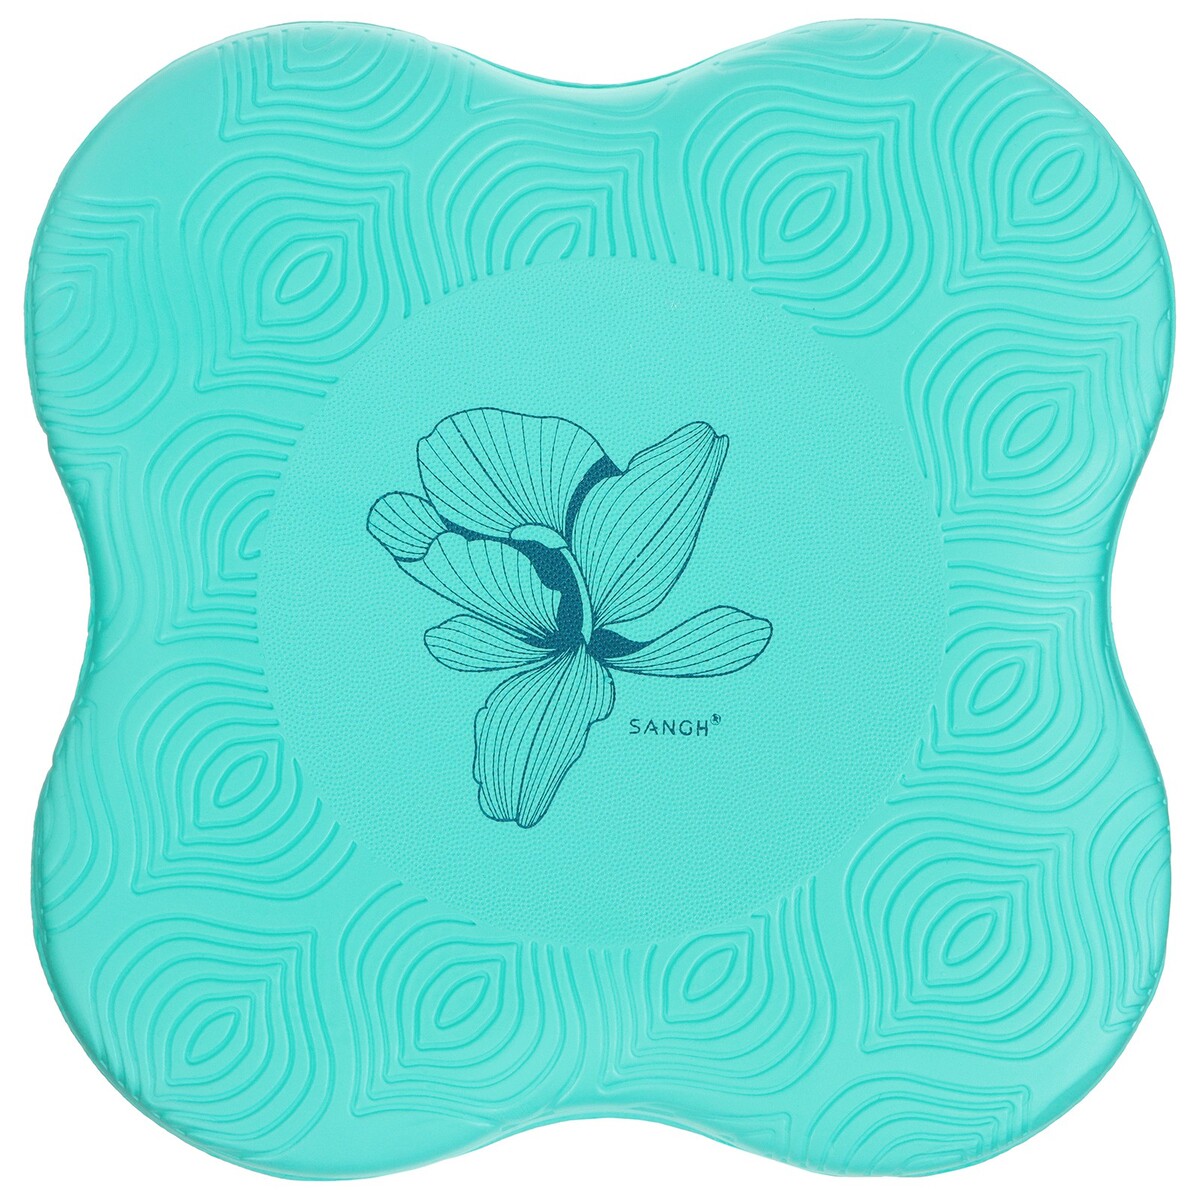 Коврик под колени для йоги sangh flower, 20х20 см, цвет бирюзовый коврик для йоги sangh луна 183х61х0 6 см пастельный голубой